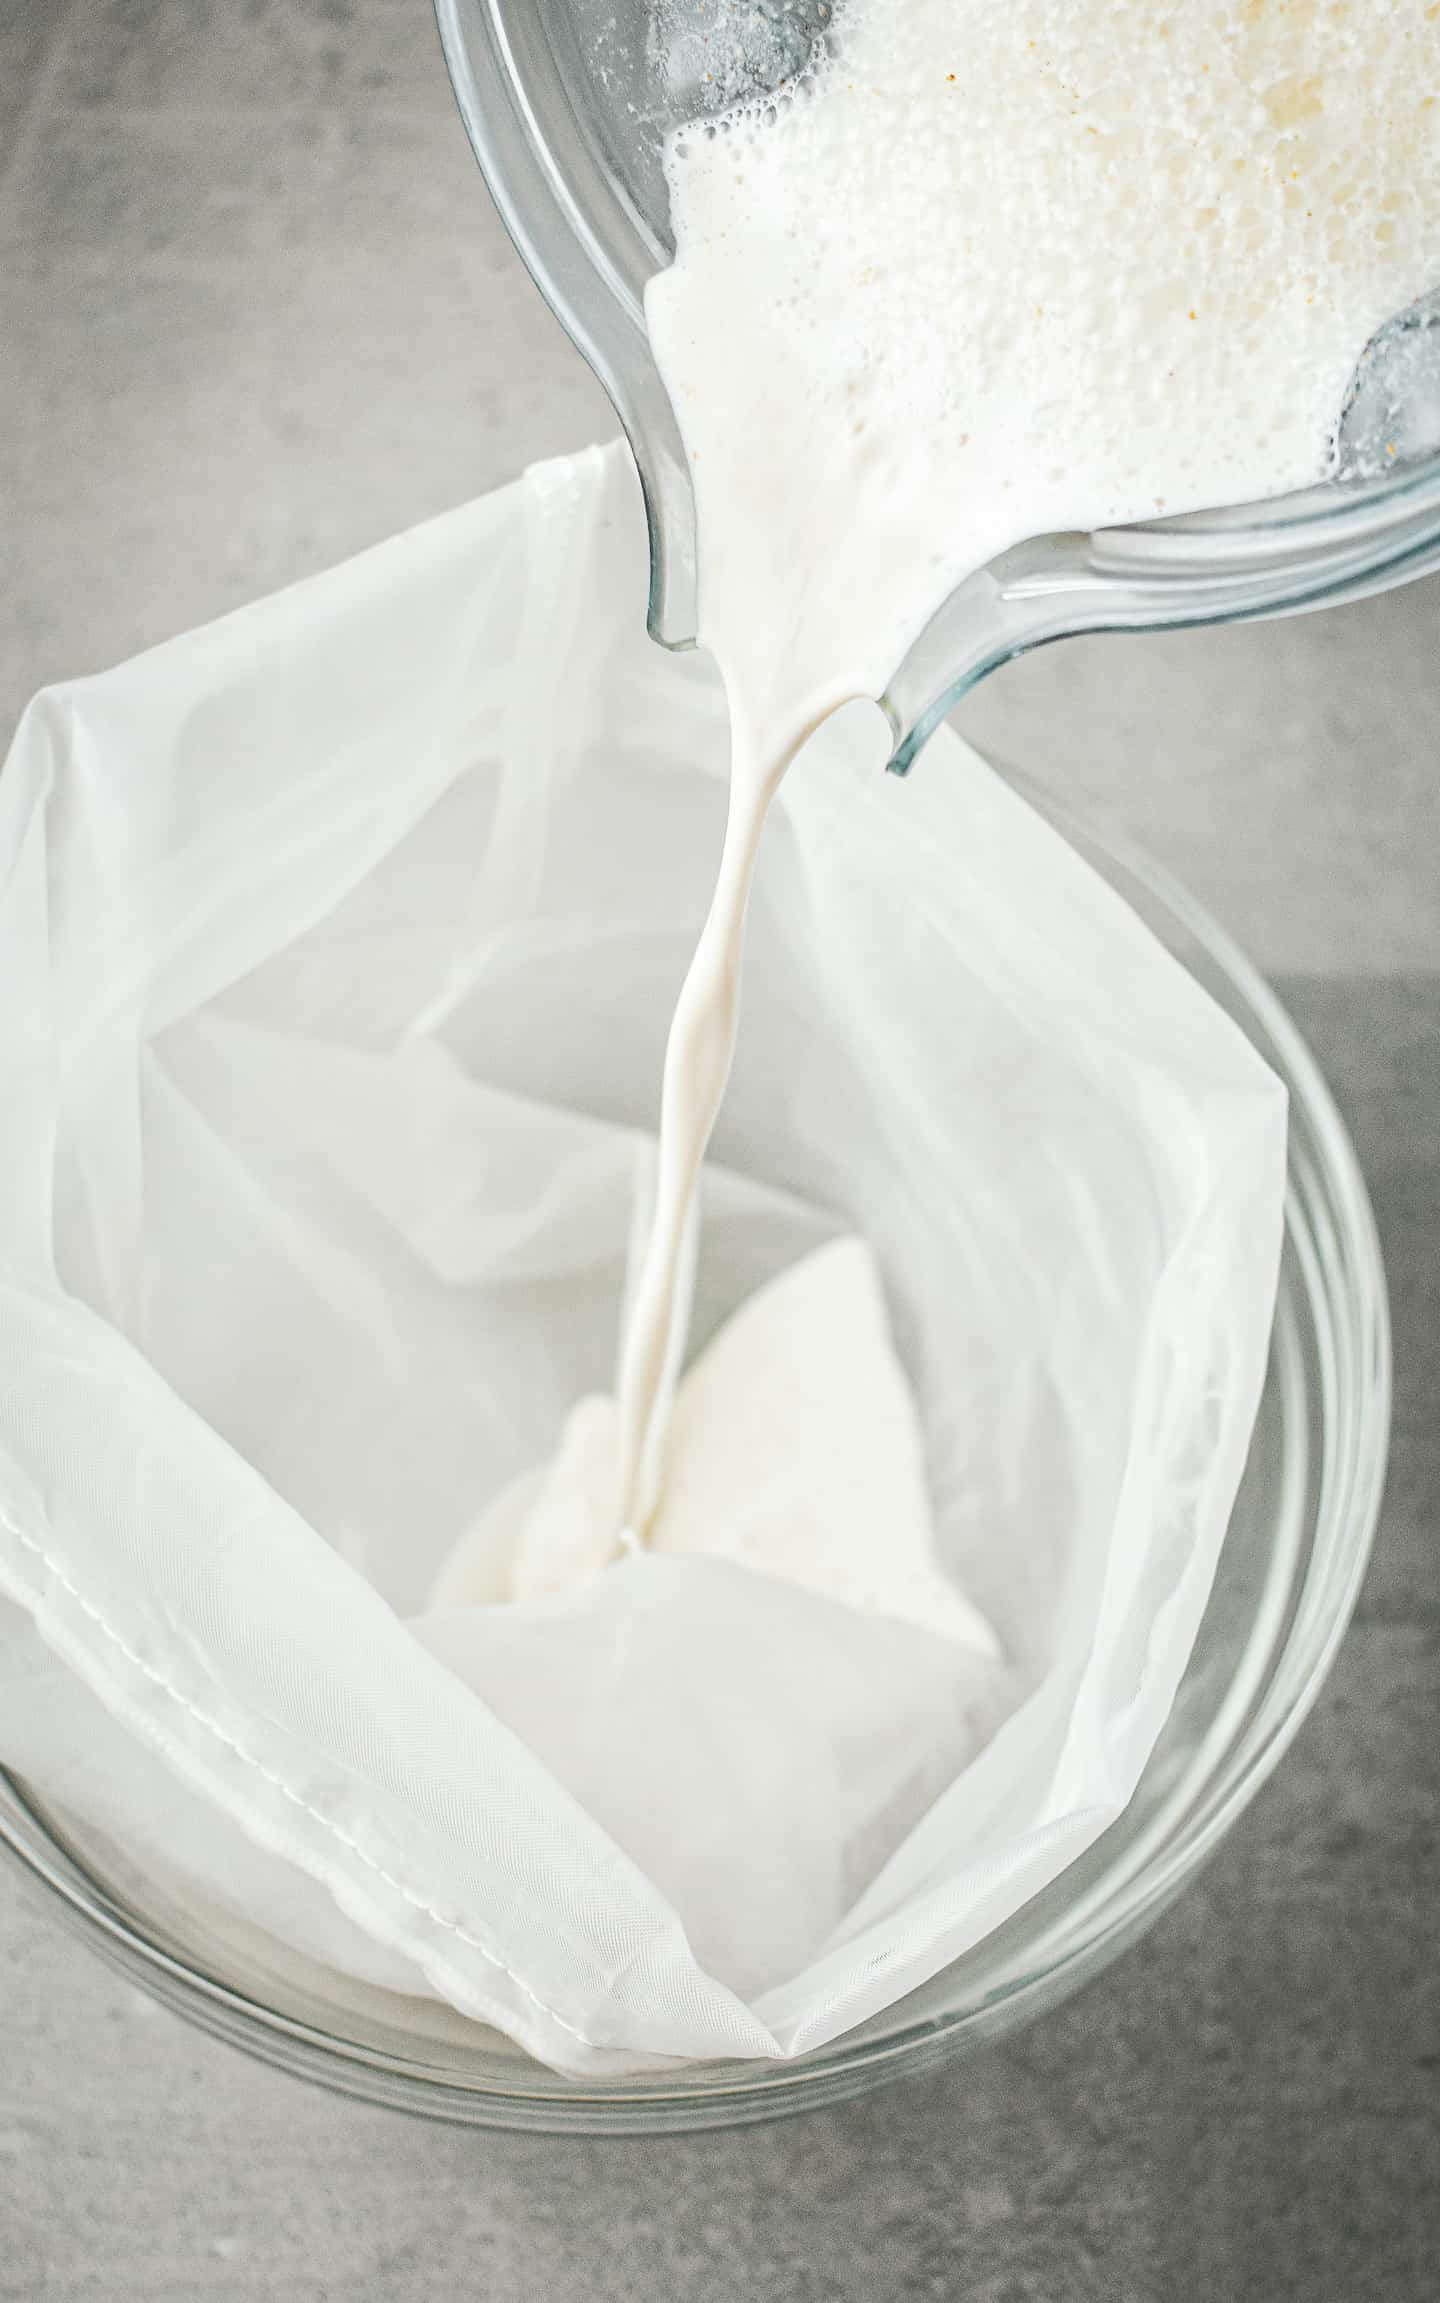 Almond milk being poured through a nut milk bag.